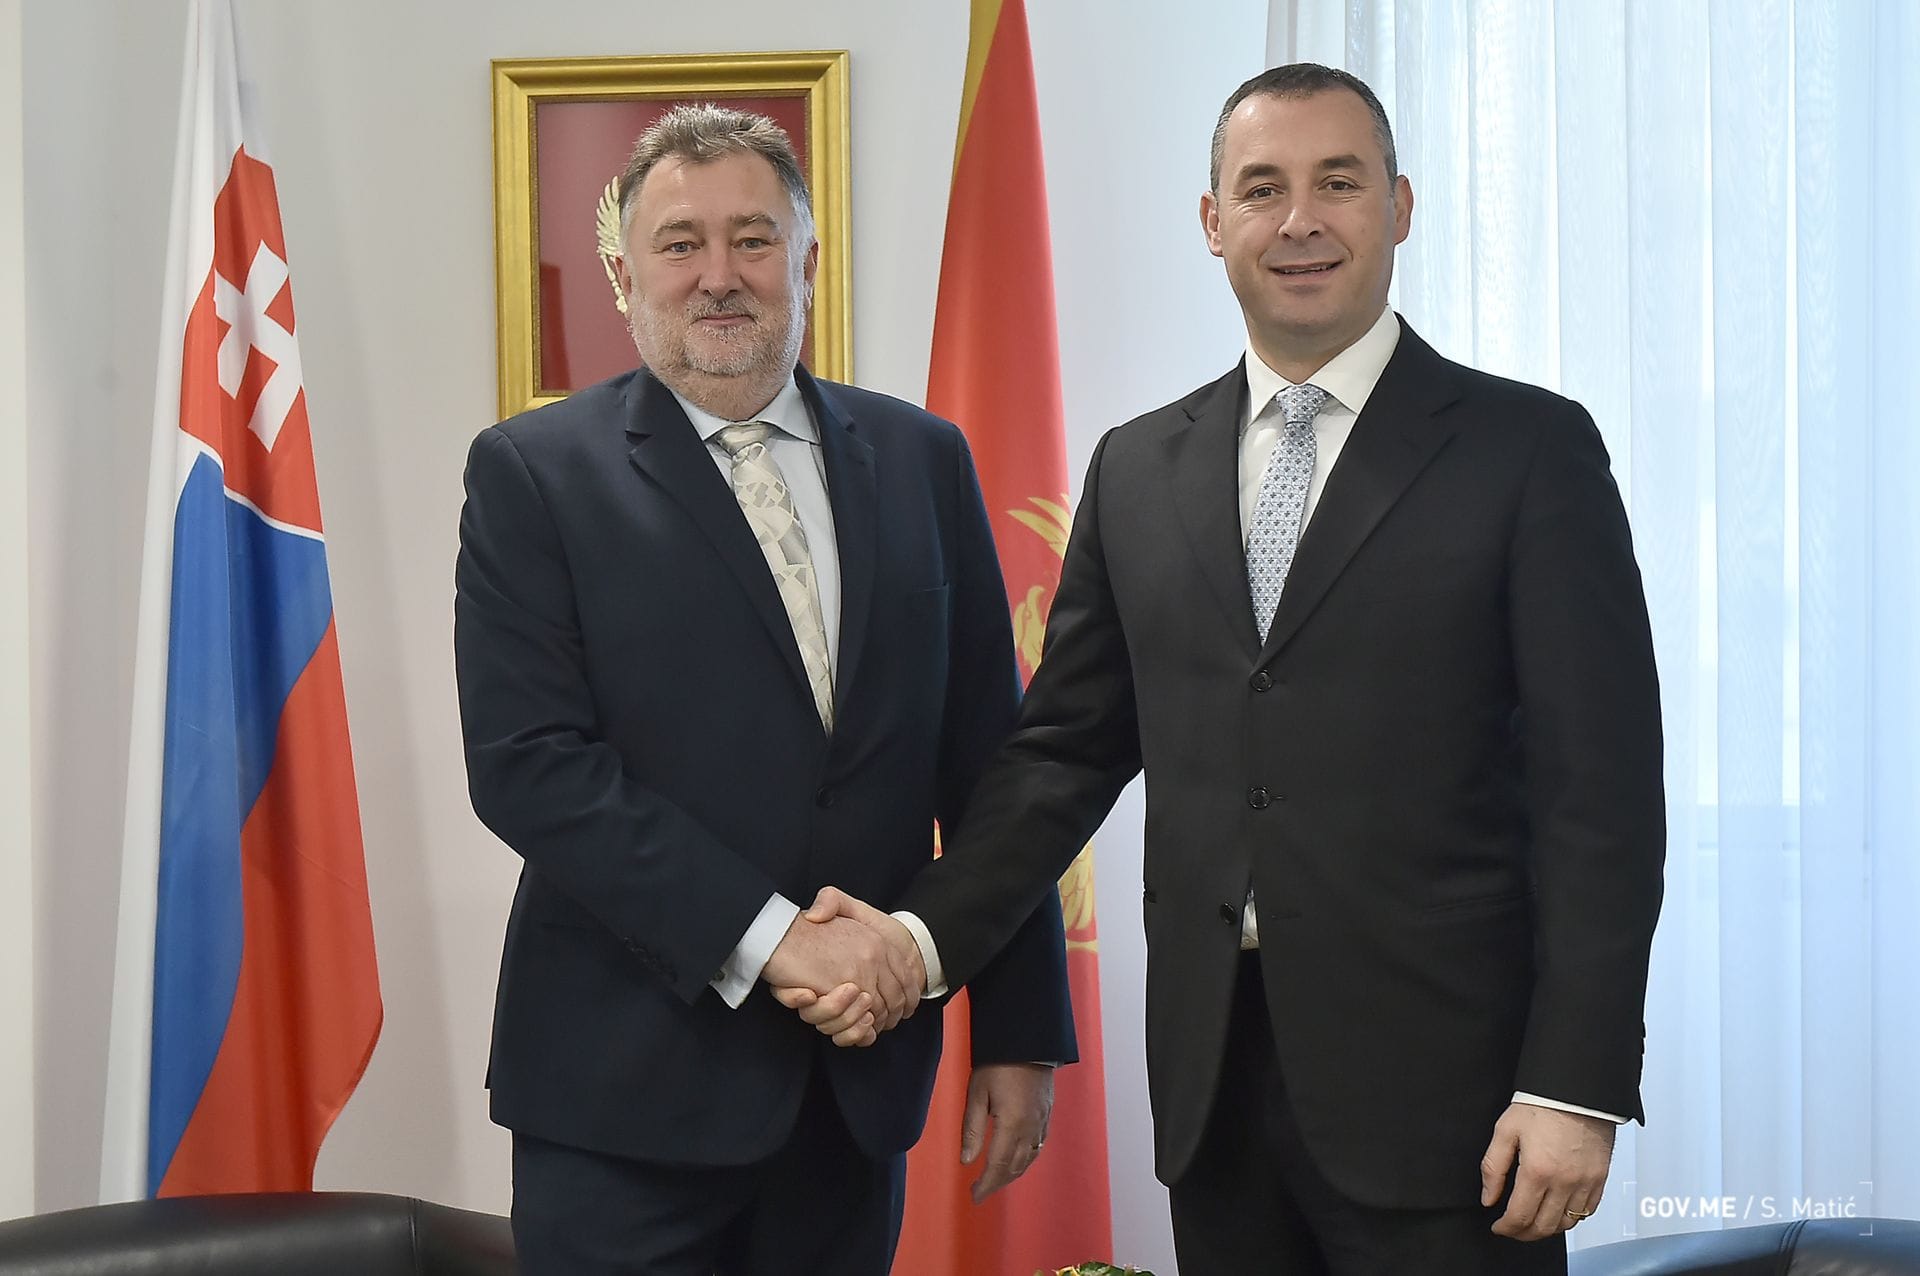 DBM Cekic sa stretáva so slovenským veľvyslancom Borisom Gandelom